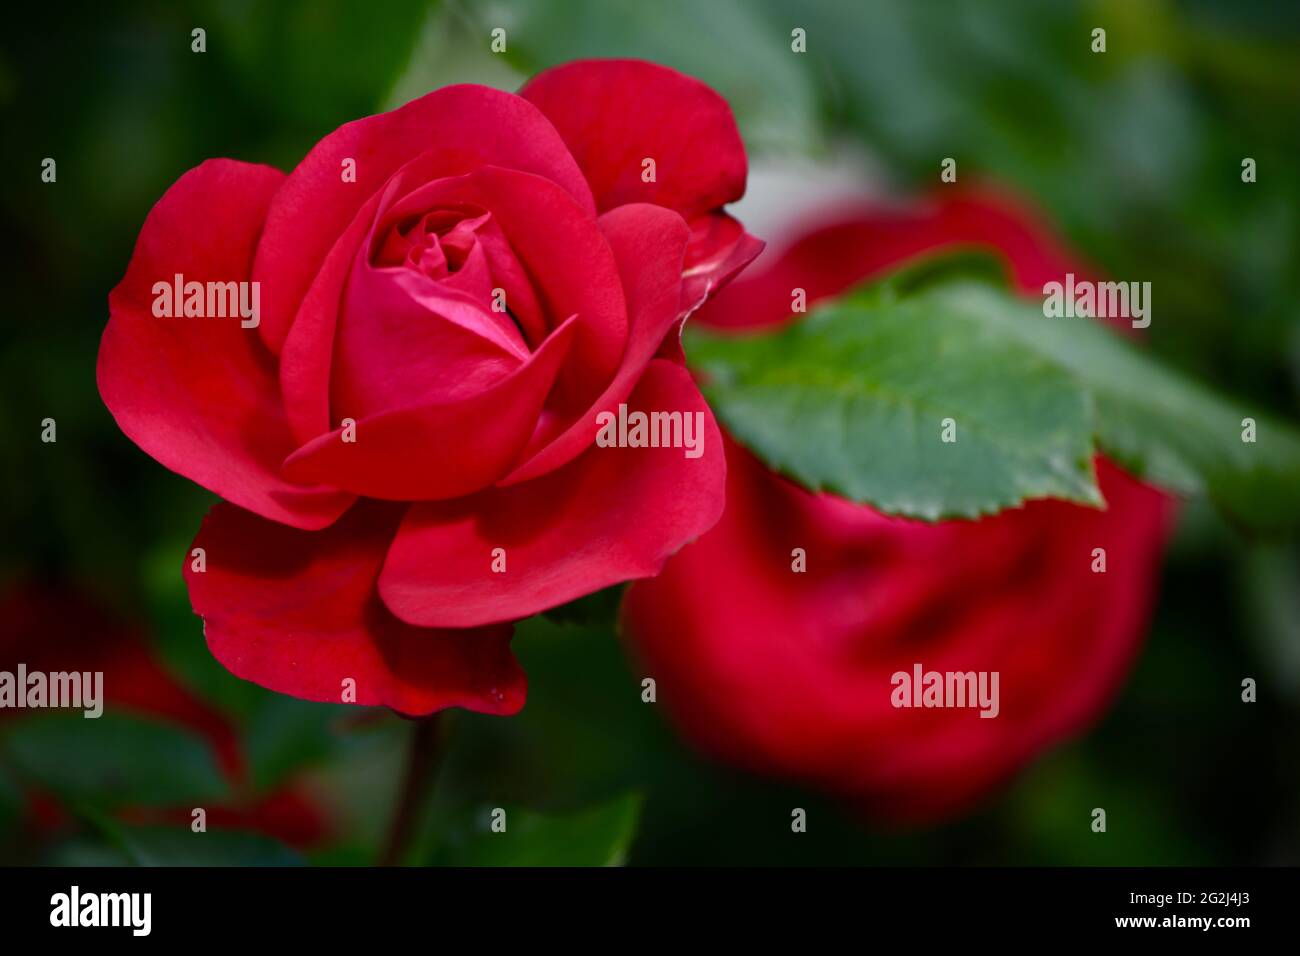 Heilpflanze Rose - rosa - mit herrlicher roter Rosenblüte als Zeichen der Liebe und Freundschaft - Grundstock der europäischen Gartenkultur, Heilpflan Stock Photo